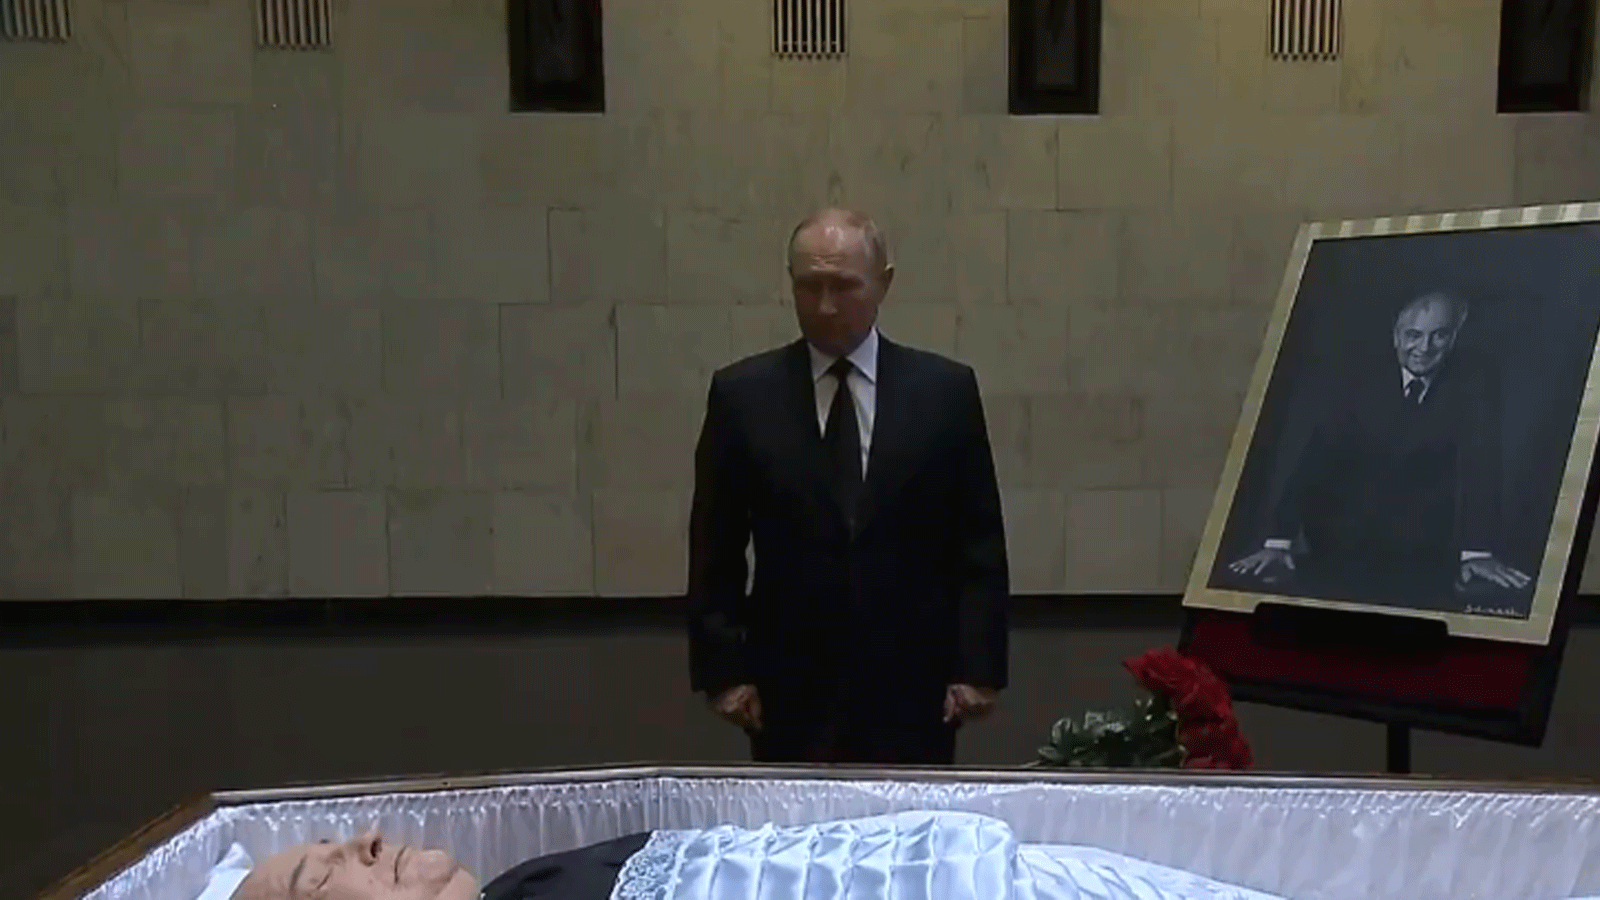 لقطة من فيديو لقناة RT الروسية للرئيس الروسي فلاديمير بوتين يقف بخشوع أمام نعش آخر رئيس للاتحاد السوفياتي ميخائيل غورباتشوف